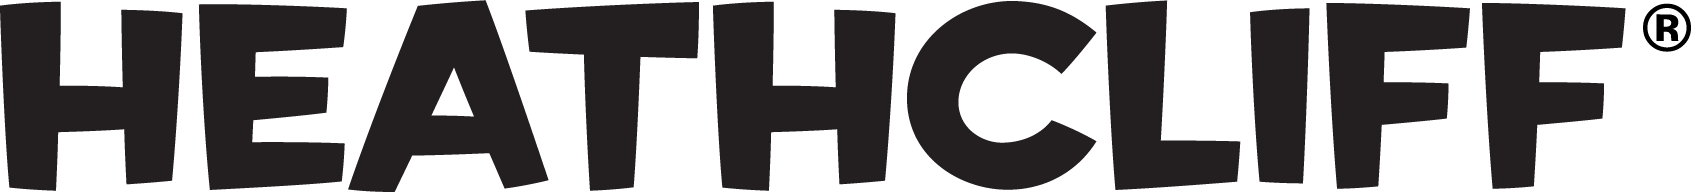 Heathcliff_logo